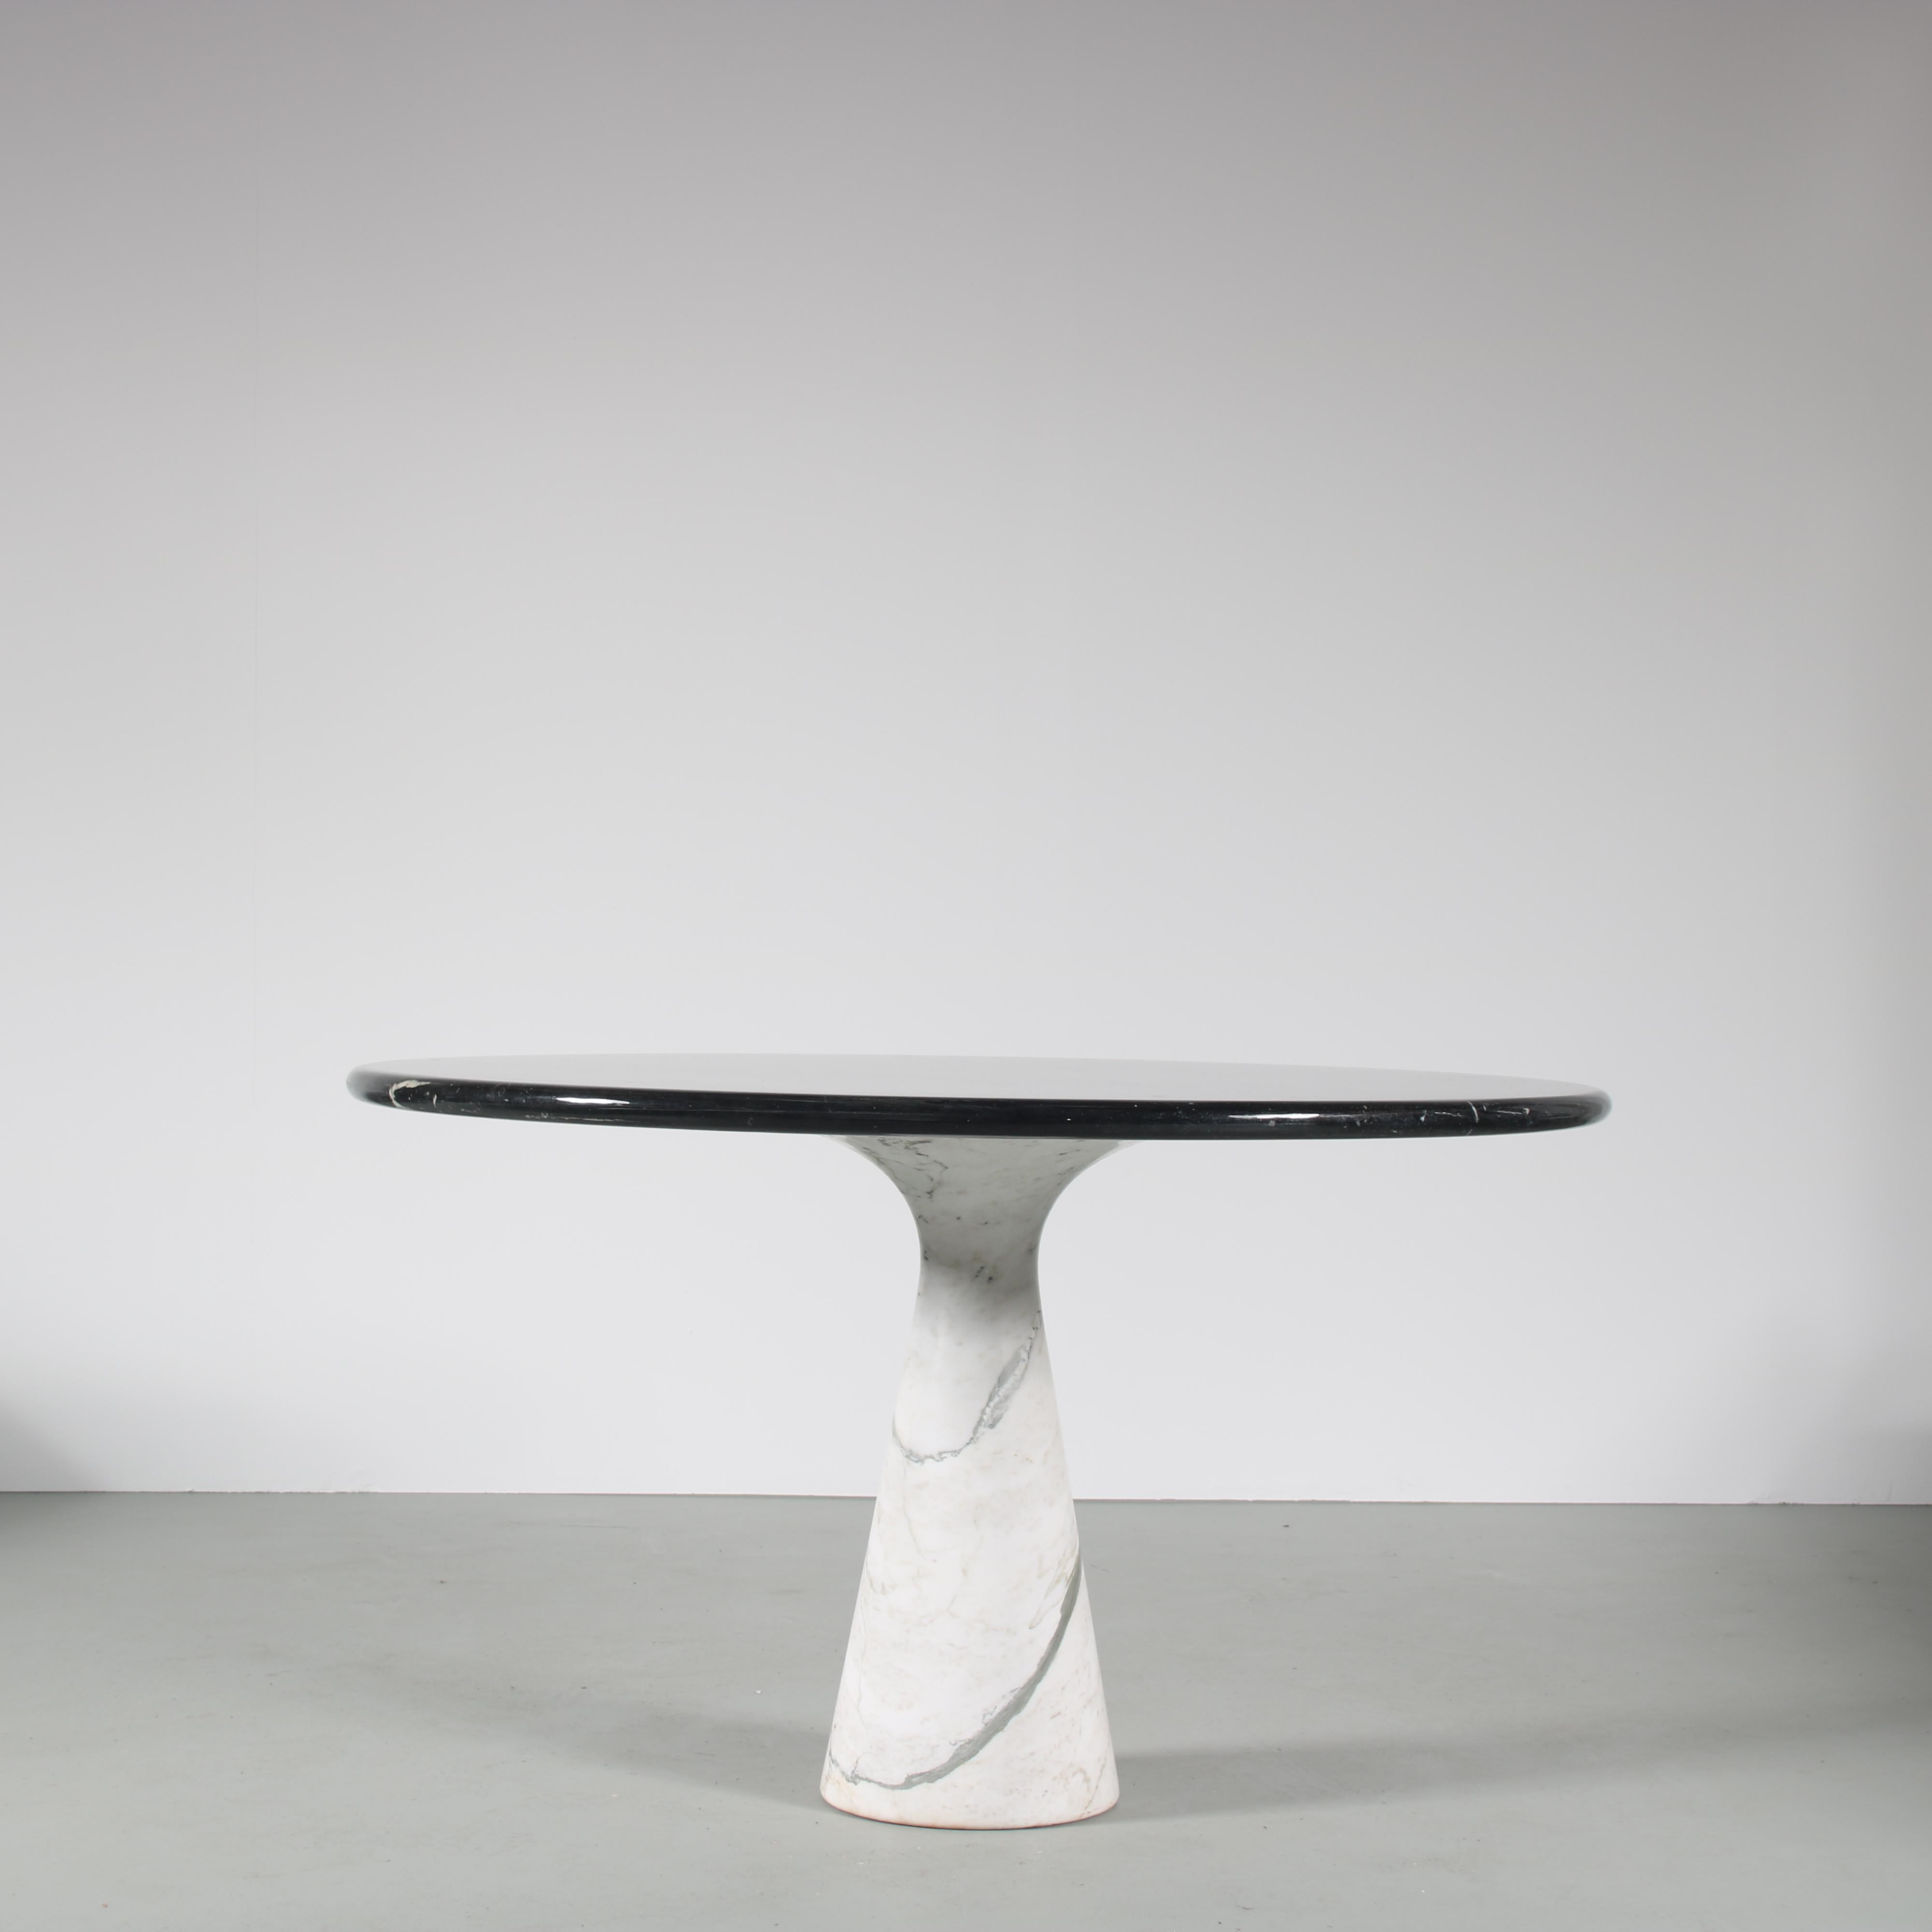 Une fantastique table à manger conçue par Angelo Mangiarotti, fabriquée par Skipper en Italie vers 1960.

Cette pièce impressionnante est faite de marbre blanc de haute qualité avec un plateau rond en marbre noir. Un matériau qui exprime